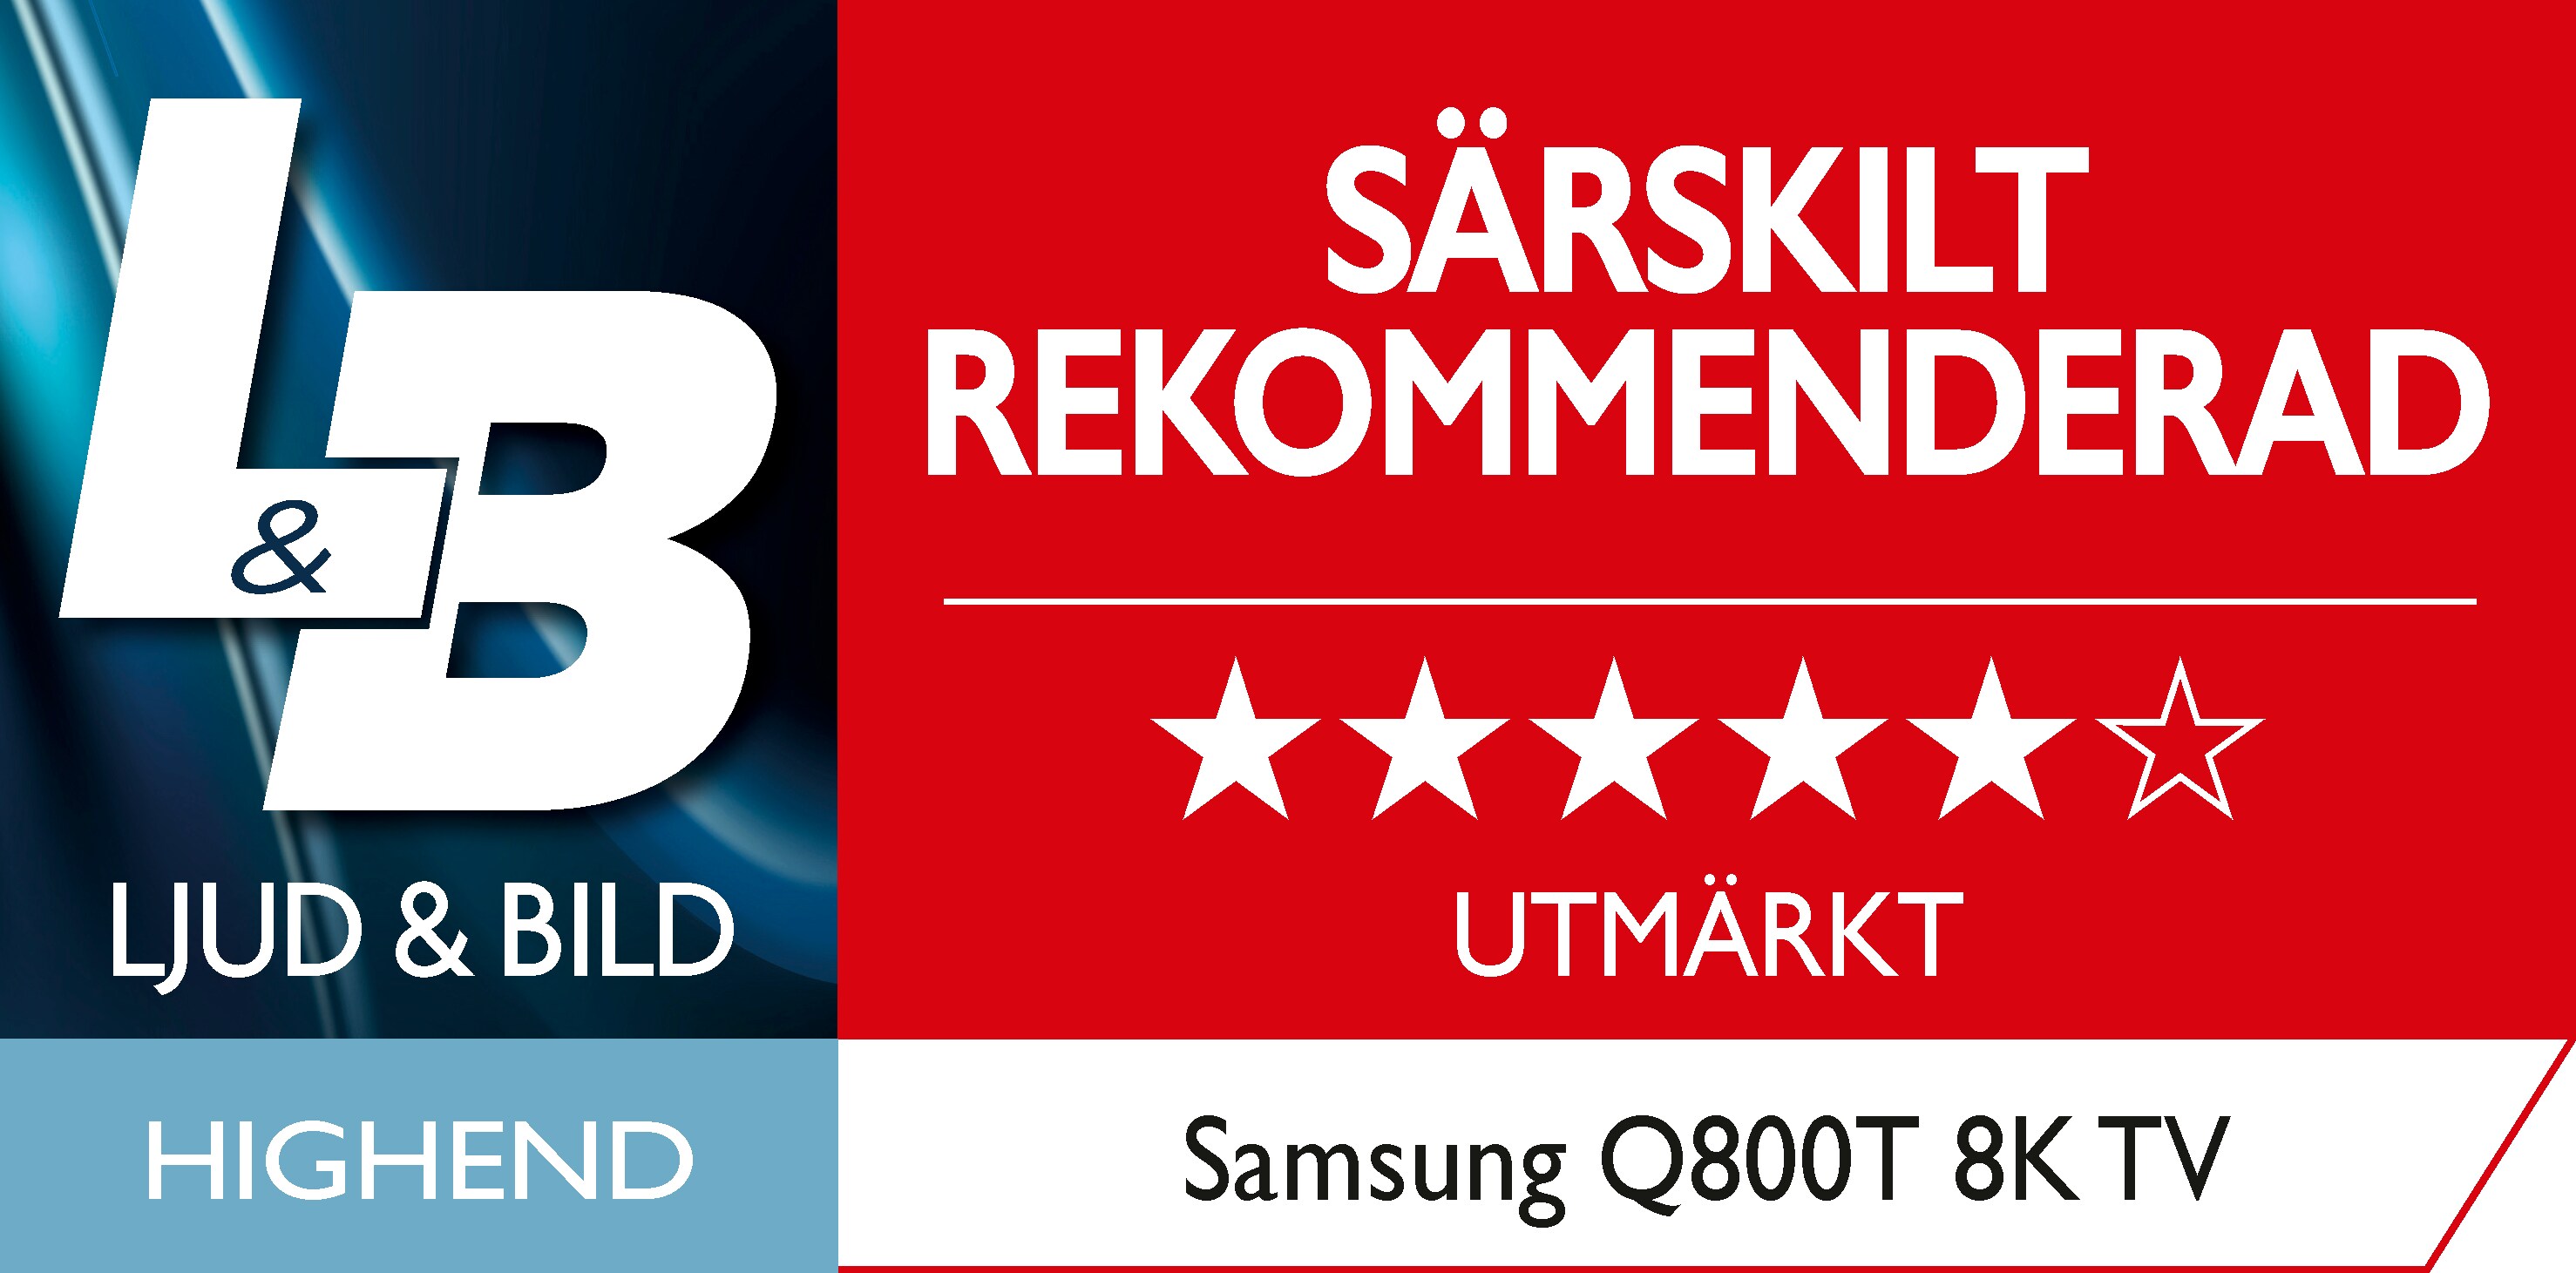  L & B-pris för Samsung Q800T SE